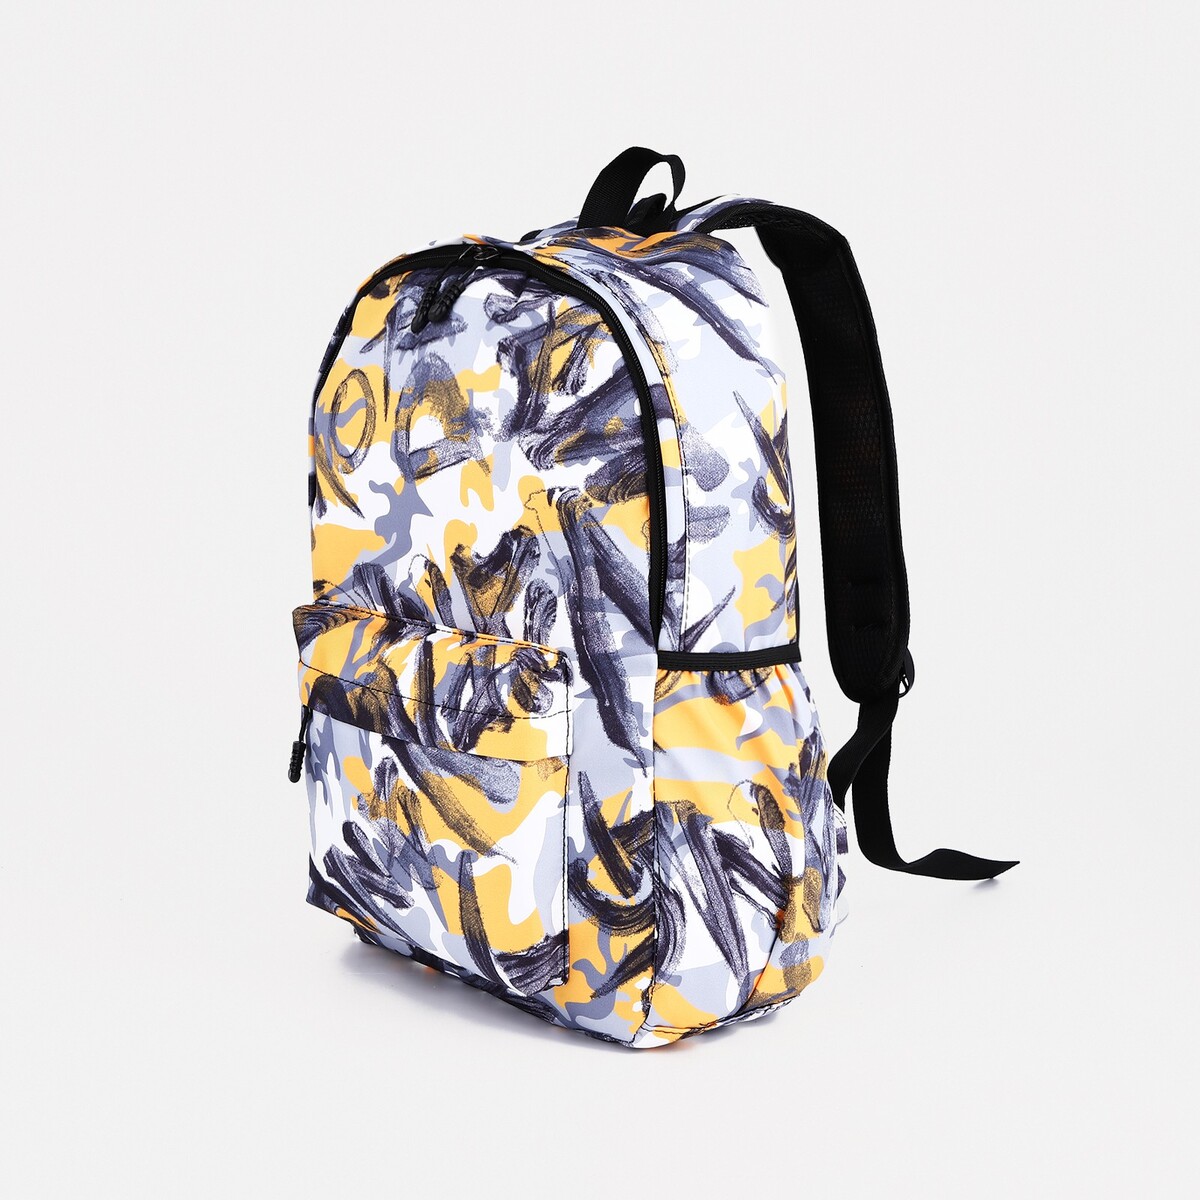 Рюкзак школьный из текстиля на молнии, 3 кармана, цвет желтый/серый рюкзак школьный из текстиля на молнии 4 кармана серый